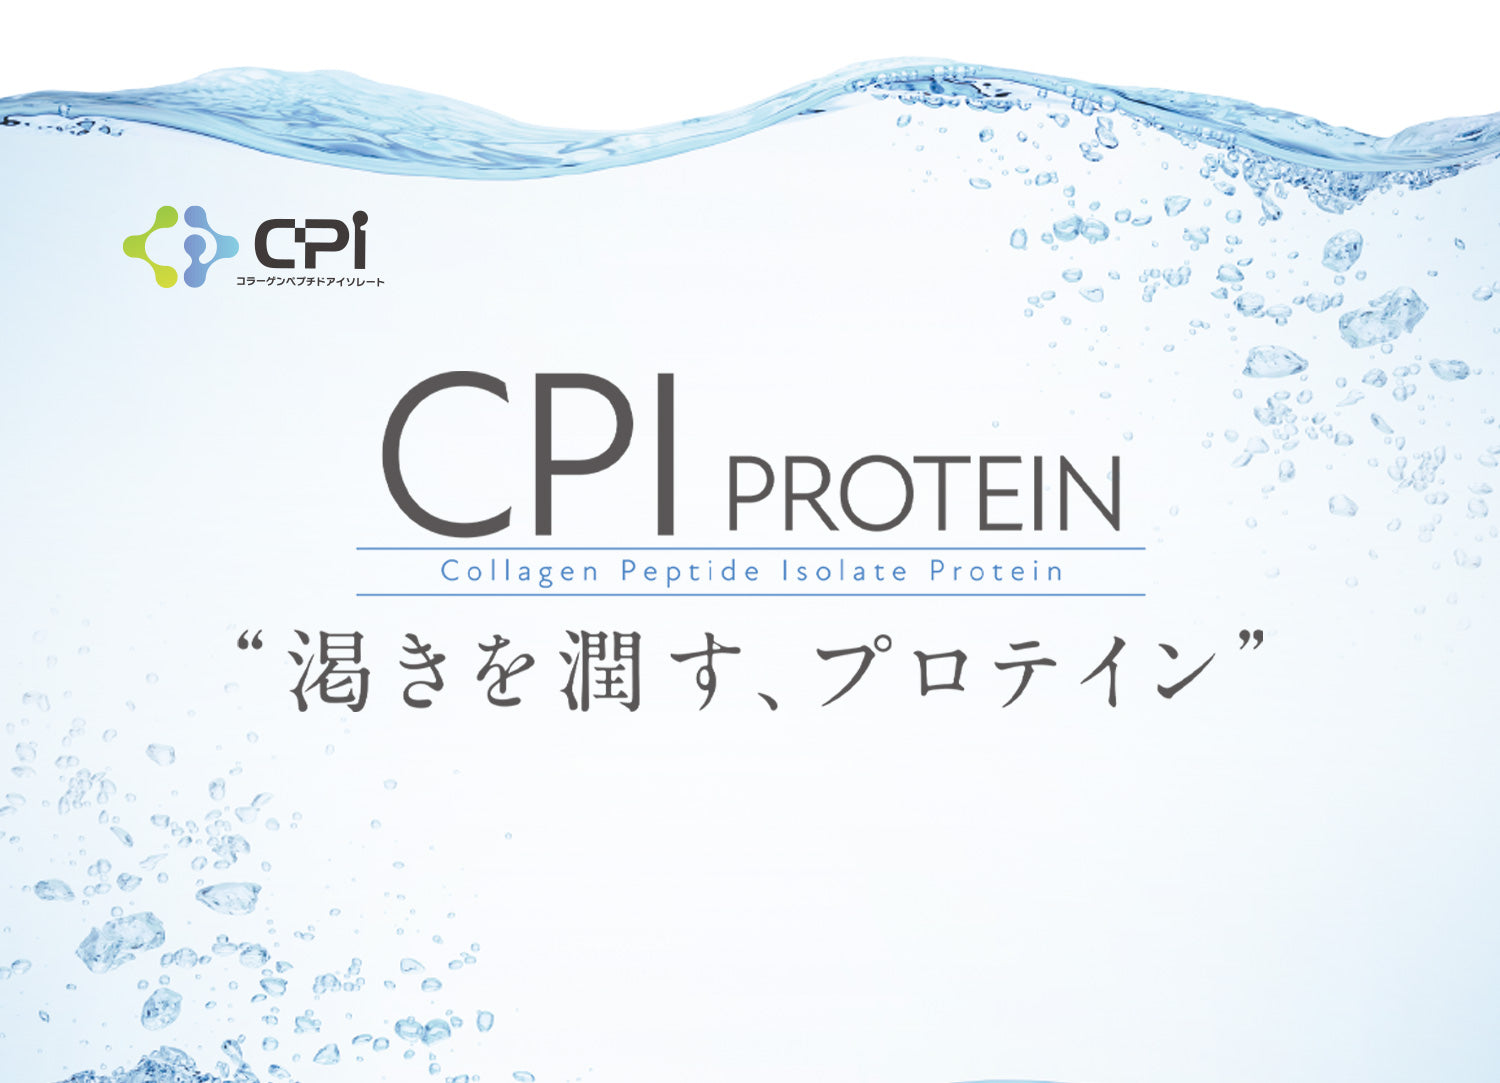 CPI Protein 渇きを潤す、プロテイン